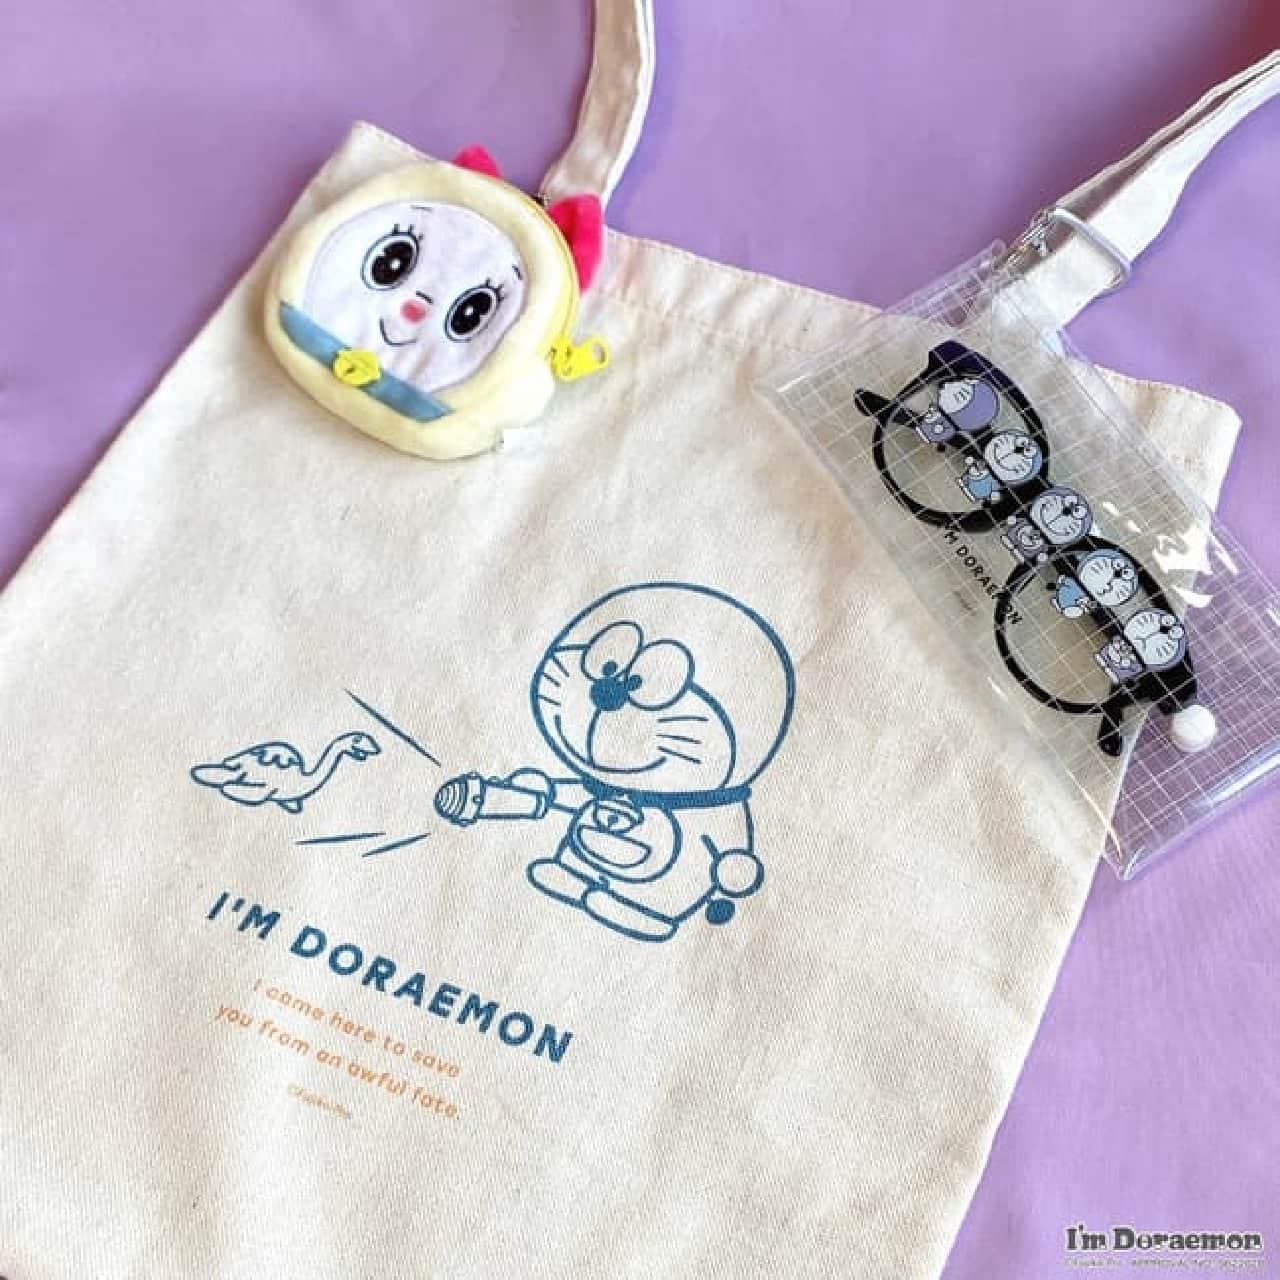 3Q Mart "I'm Doraemon" series